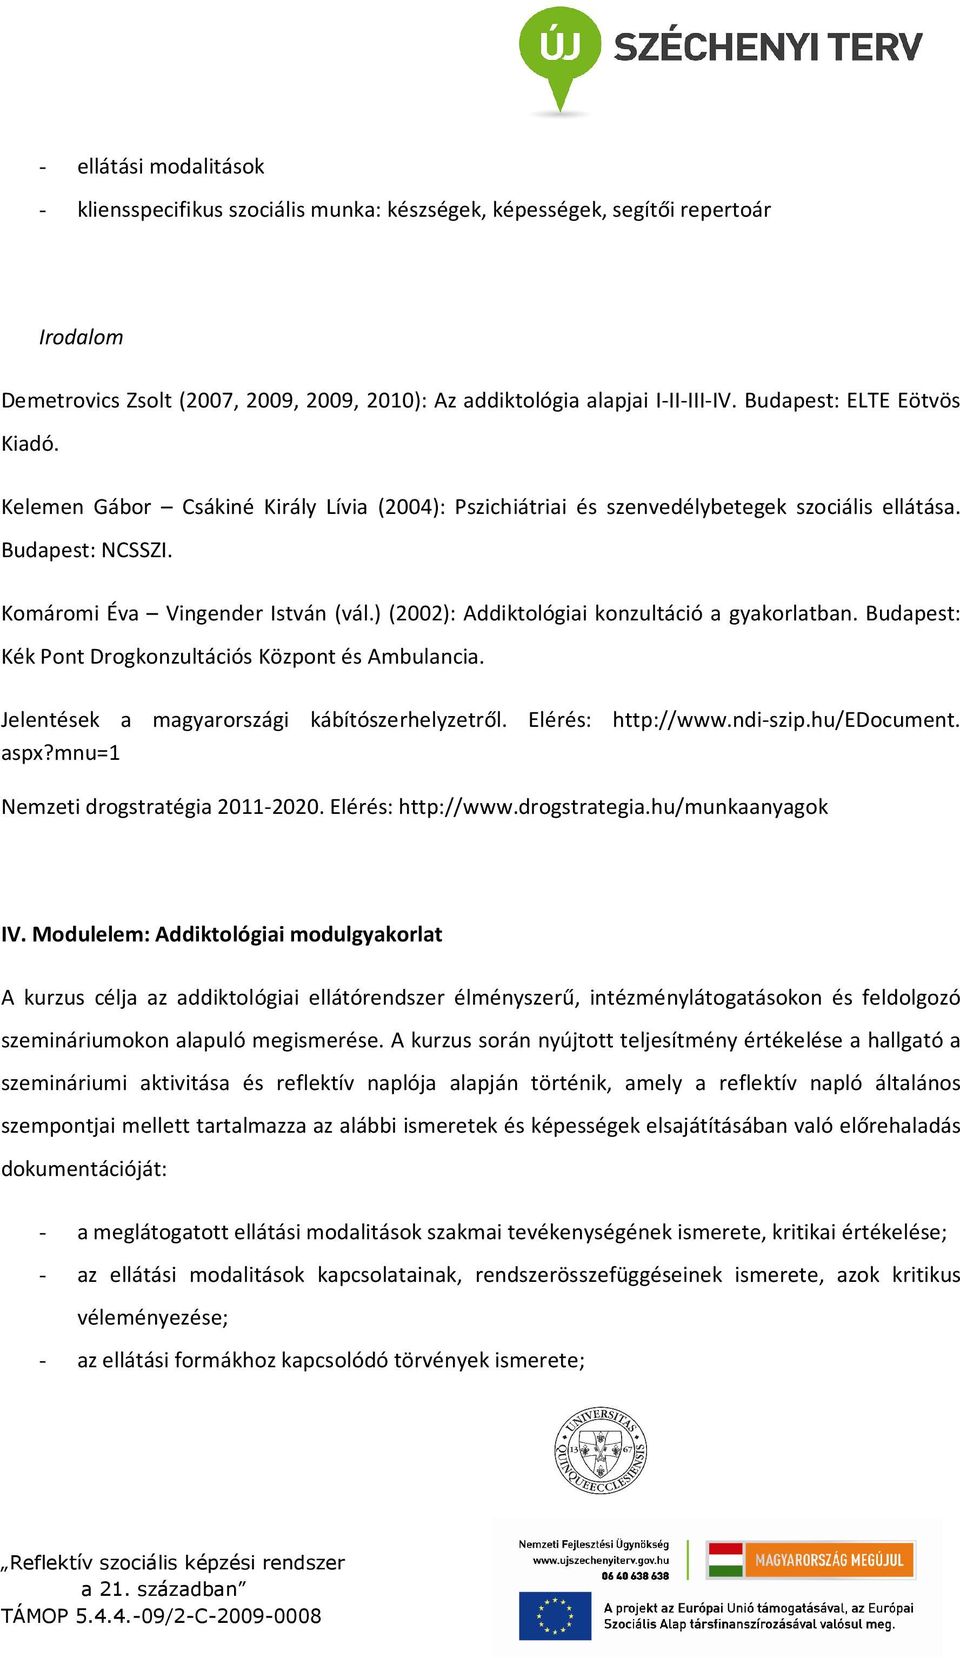 ) (2002): Addiktológiai konzultáció a gyakorlatban. Budapest: Kék Pont Drogkonzultációs Központ és Ambulancia. Jelentések a magyarországi kábítószerhelyzetről. Elérés: http://www.ndi-szip.